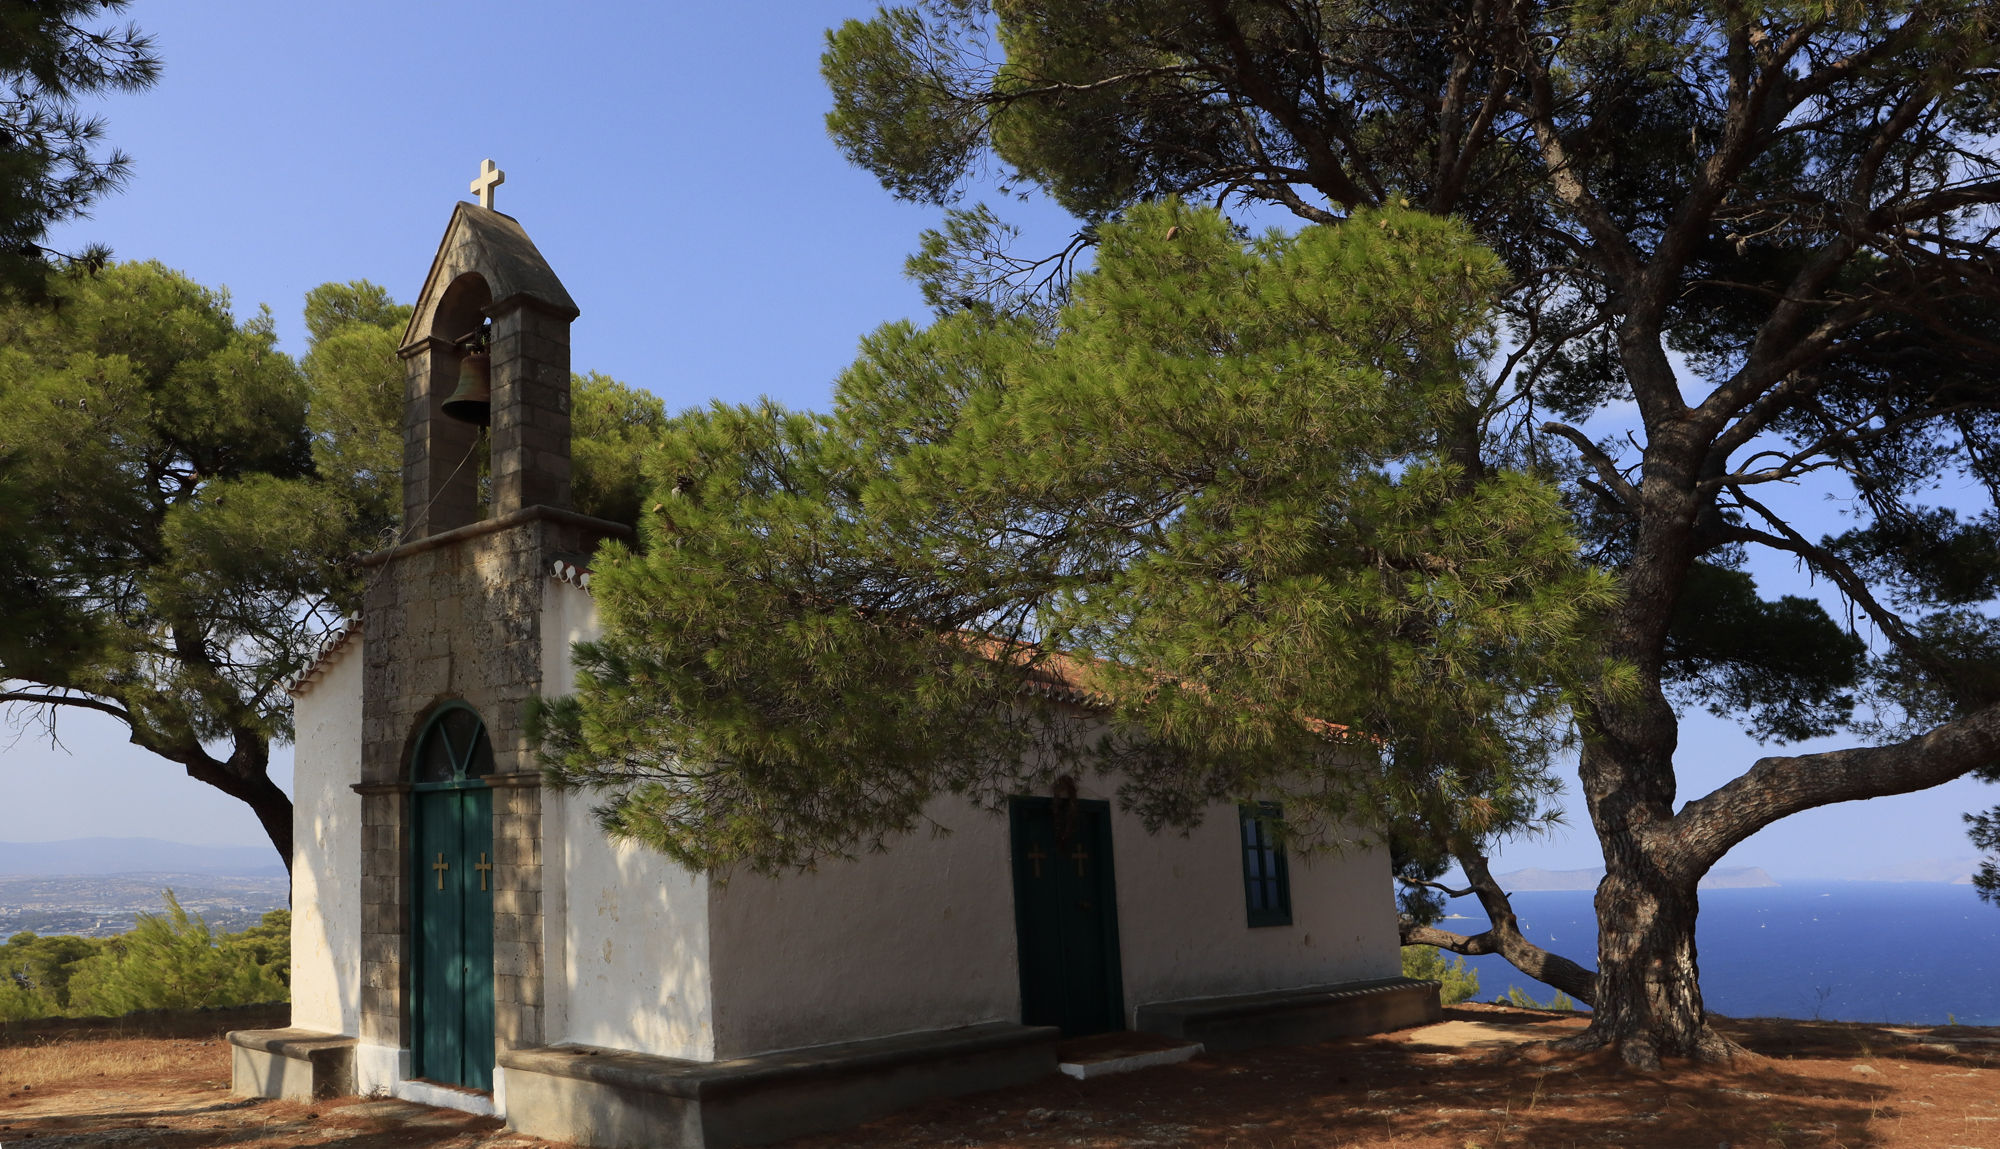 Σπέτσες: Η Παναγία Δασκαλάκη, τοπόσημο της ορεινής ζώνης του νησιού